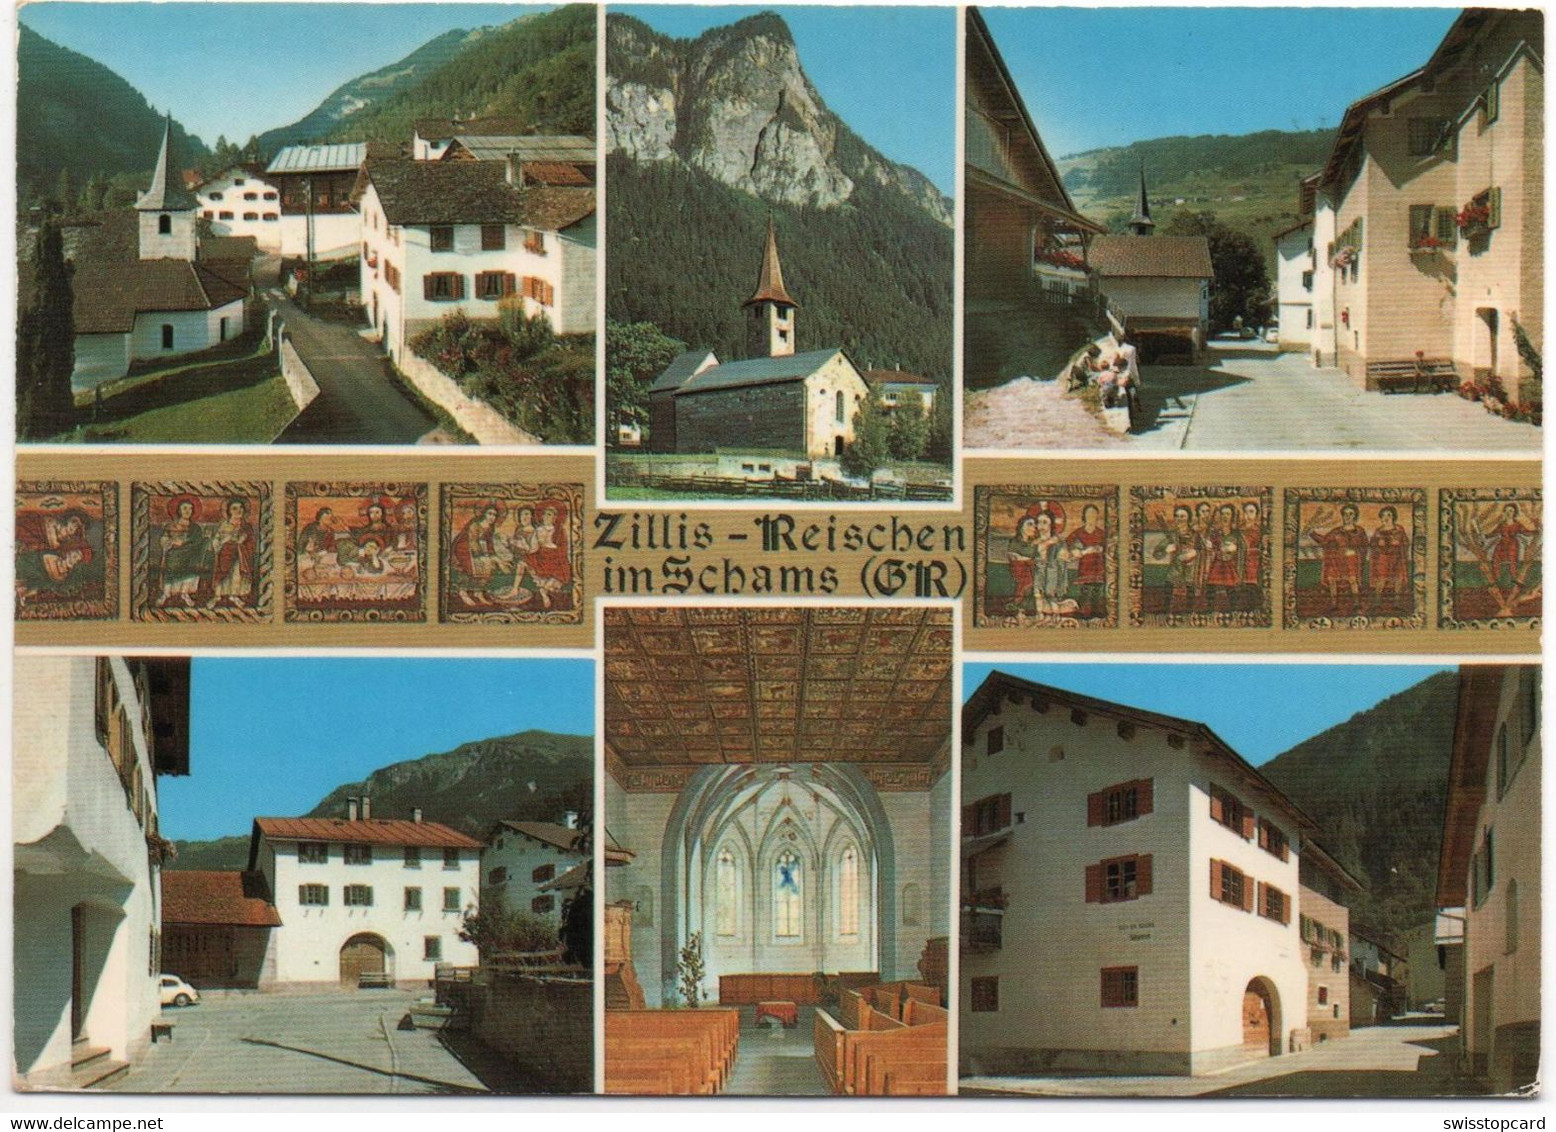 ZILLIS-REISCHEN Im Schams (GR) - Zillis-Reischen